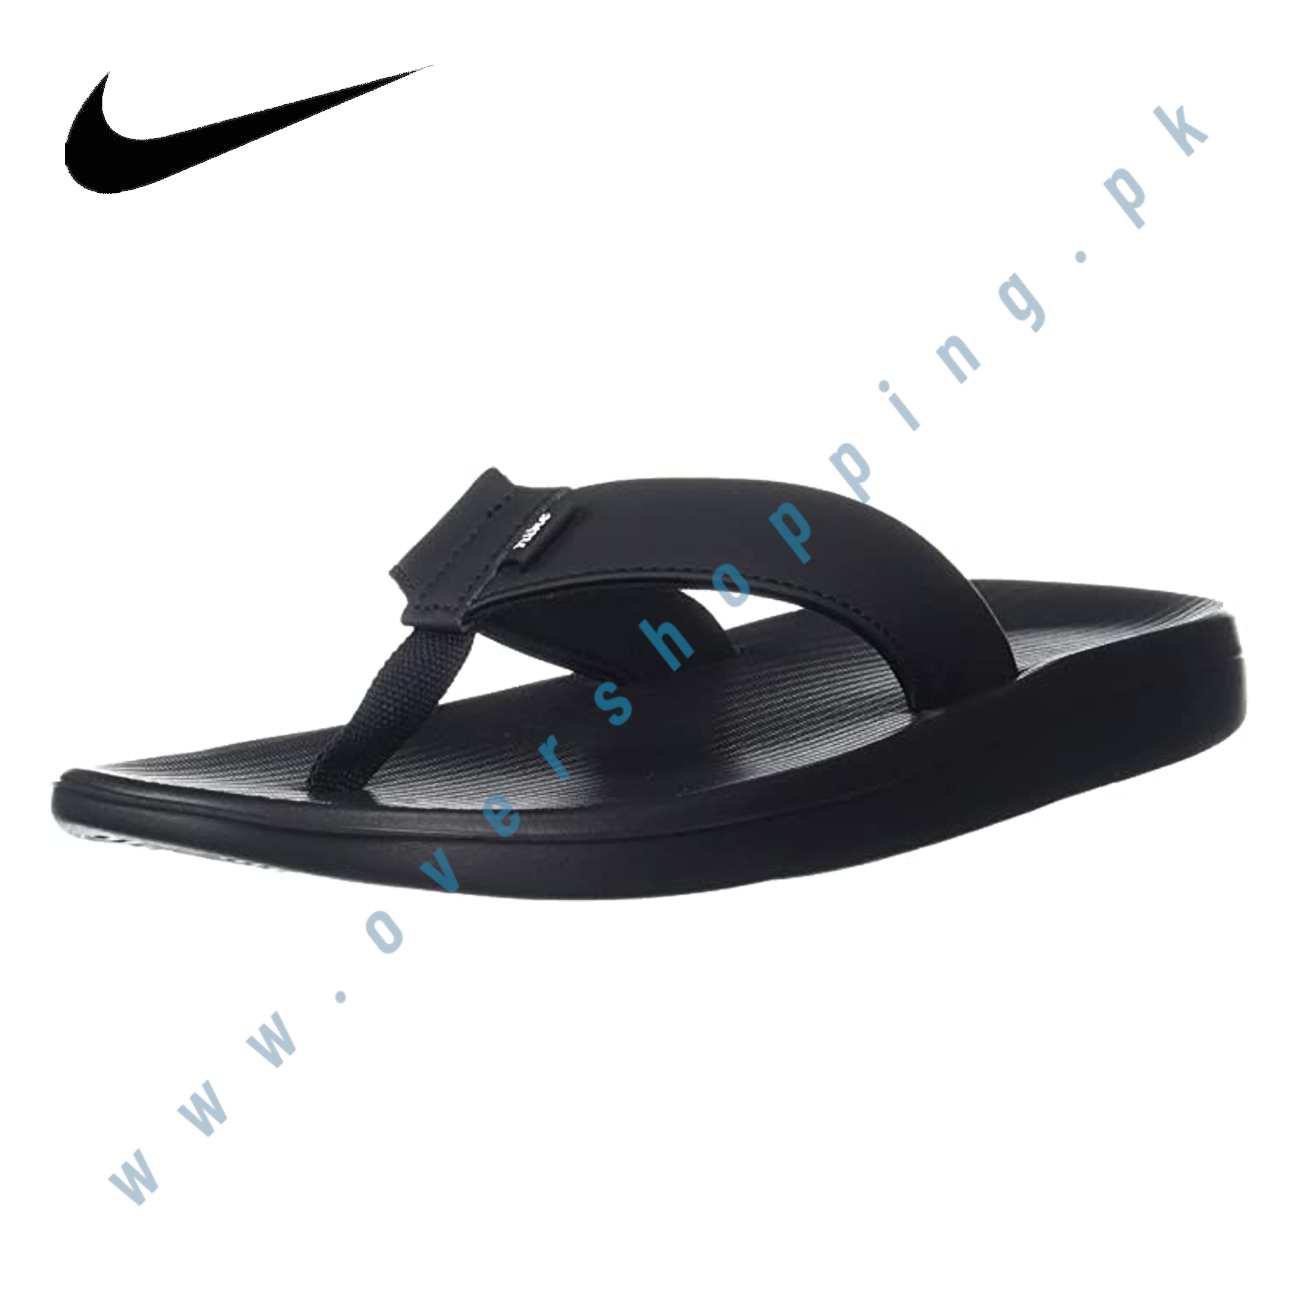 Military-Inspired Style: Nike Men's Mules, Black Flip Flop Sandal